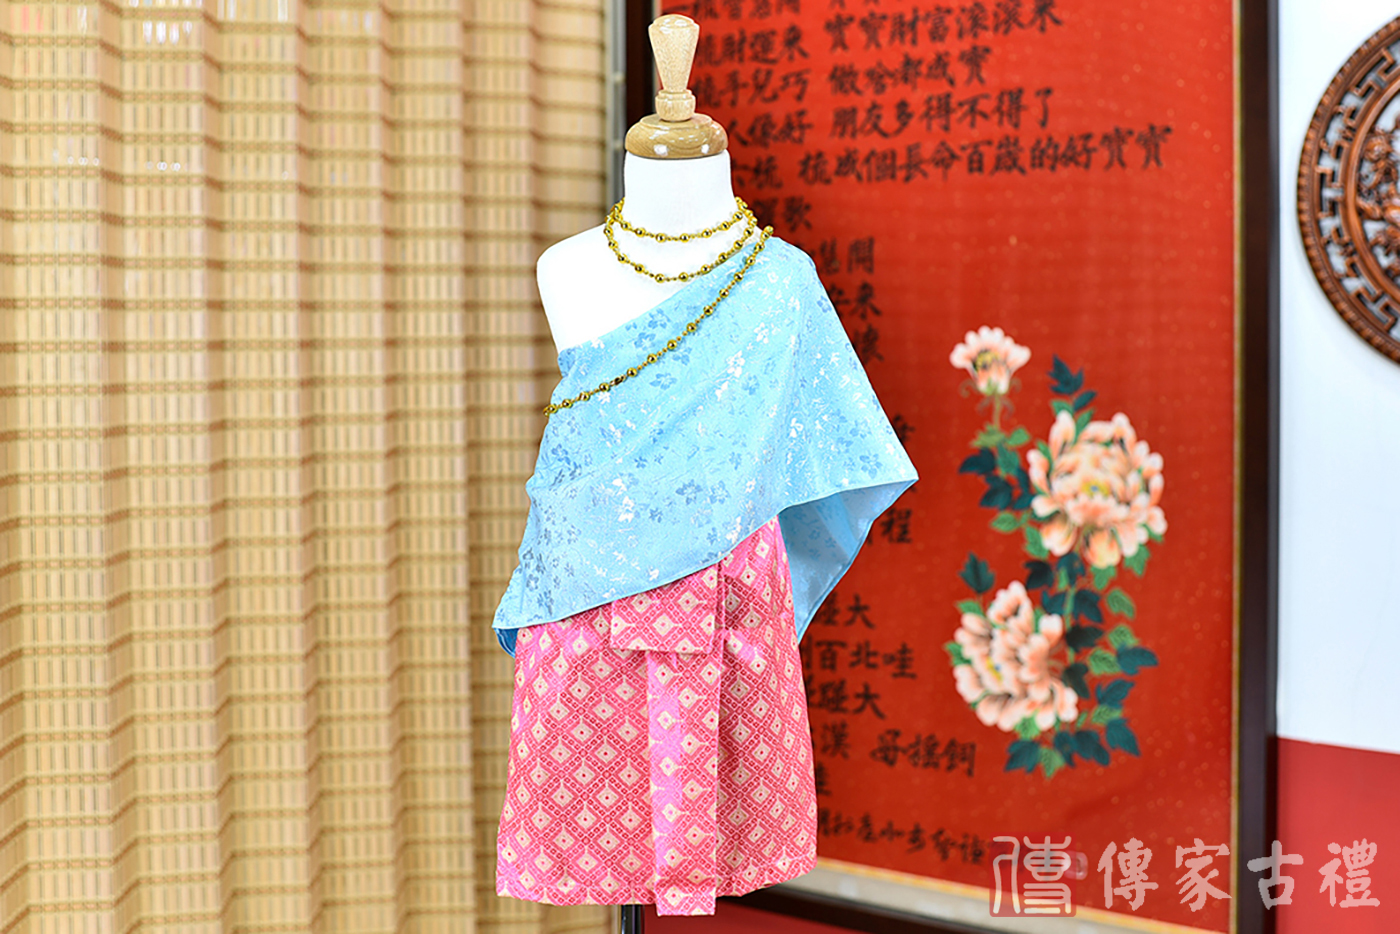 2024-02-22小孩皇室泰服古裝禮服照。天藍色絲質披肩與粉橘色傳統泰裙的泰式古裝禮服。照片集